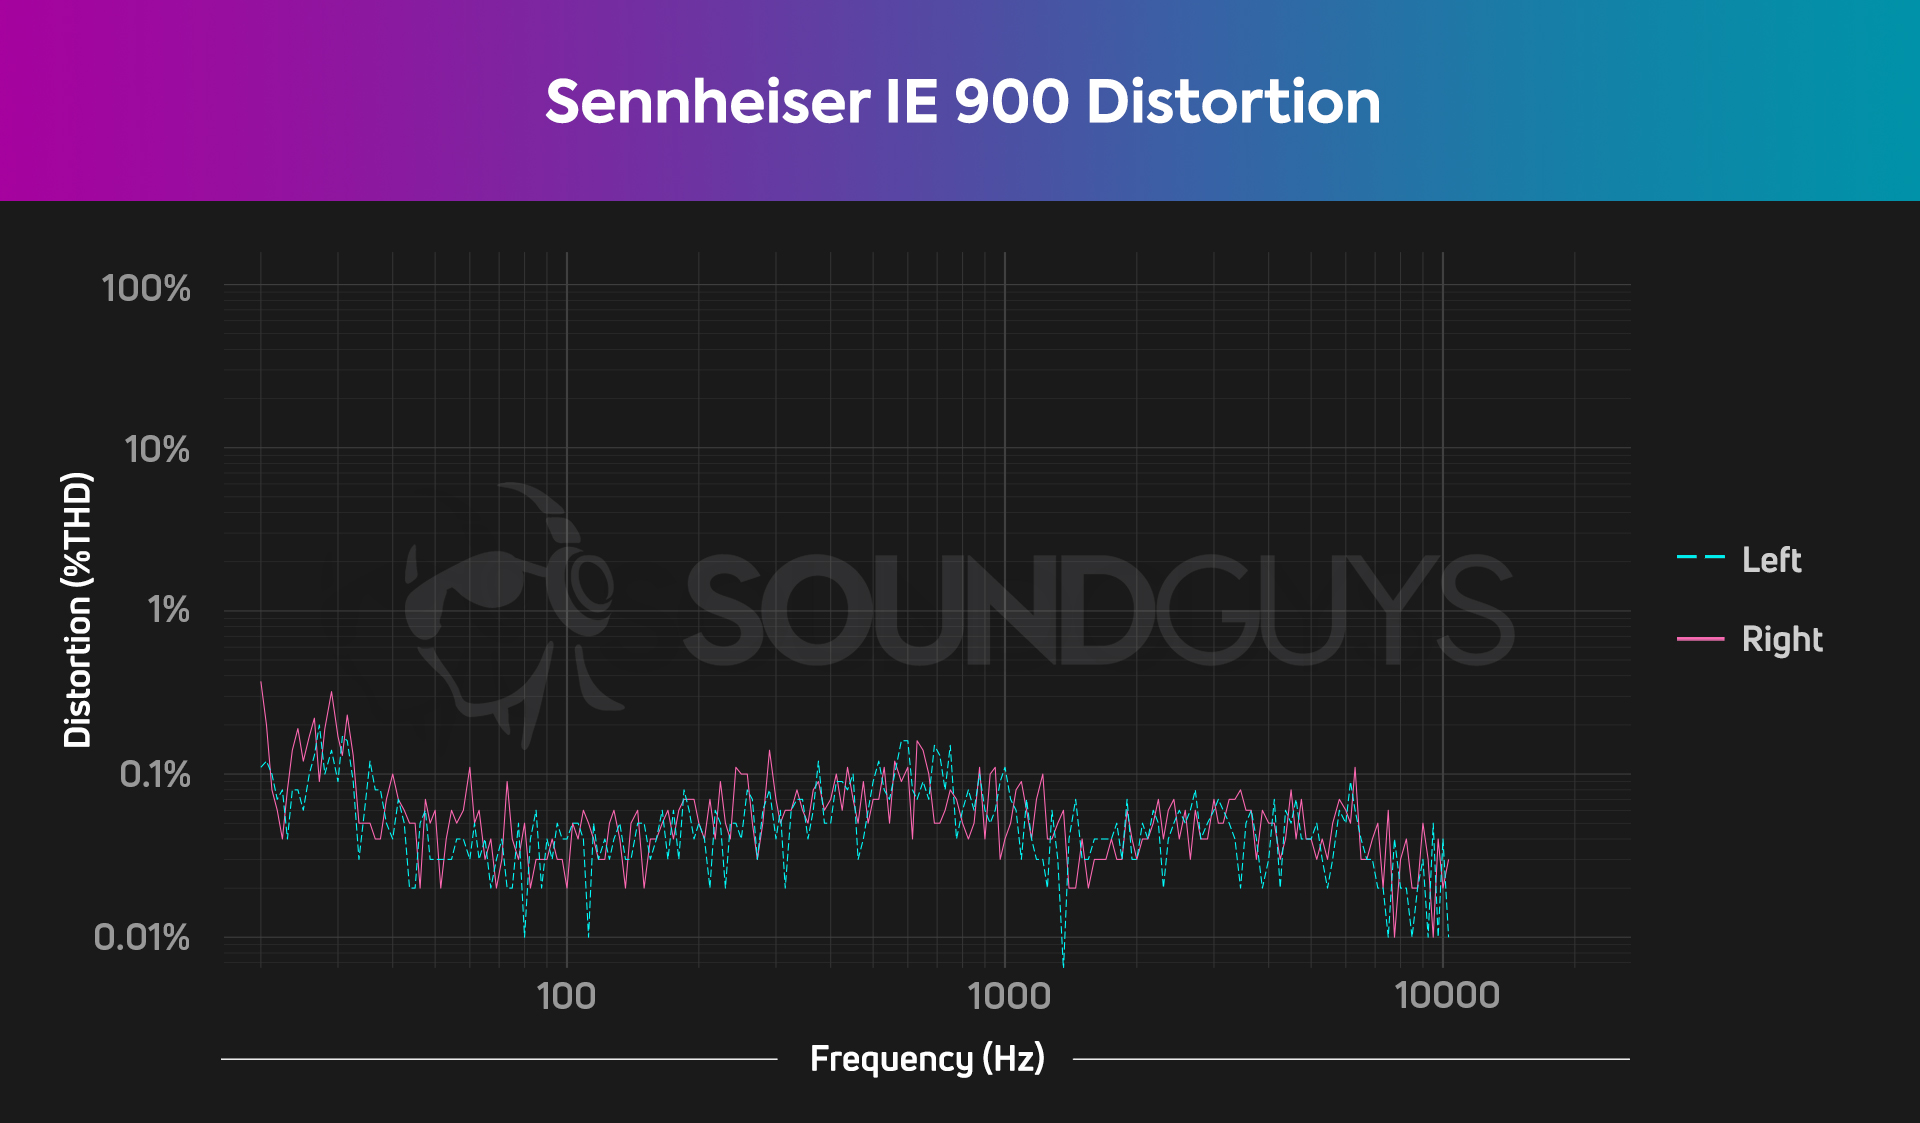 Total Harmonic Distortion chart for the Sennheiser IE 900